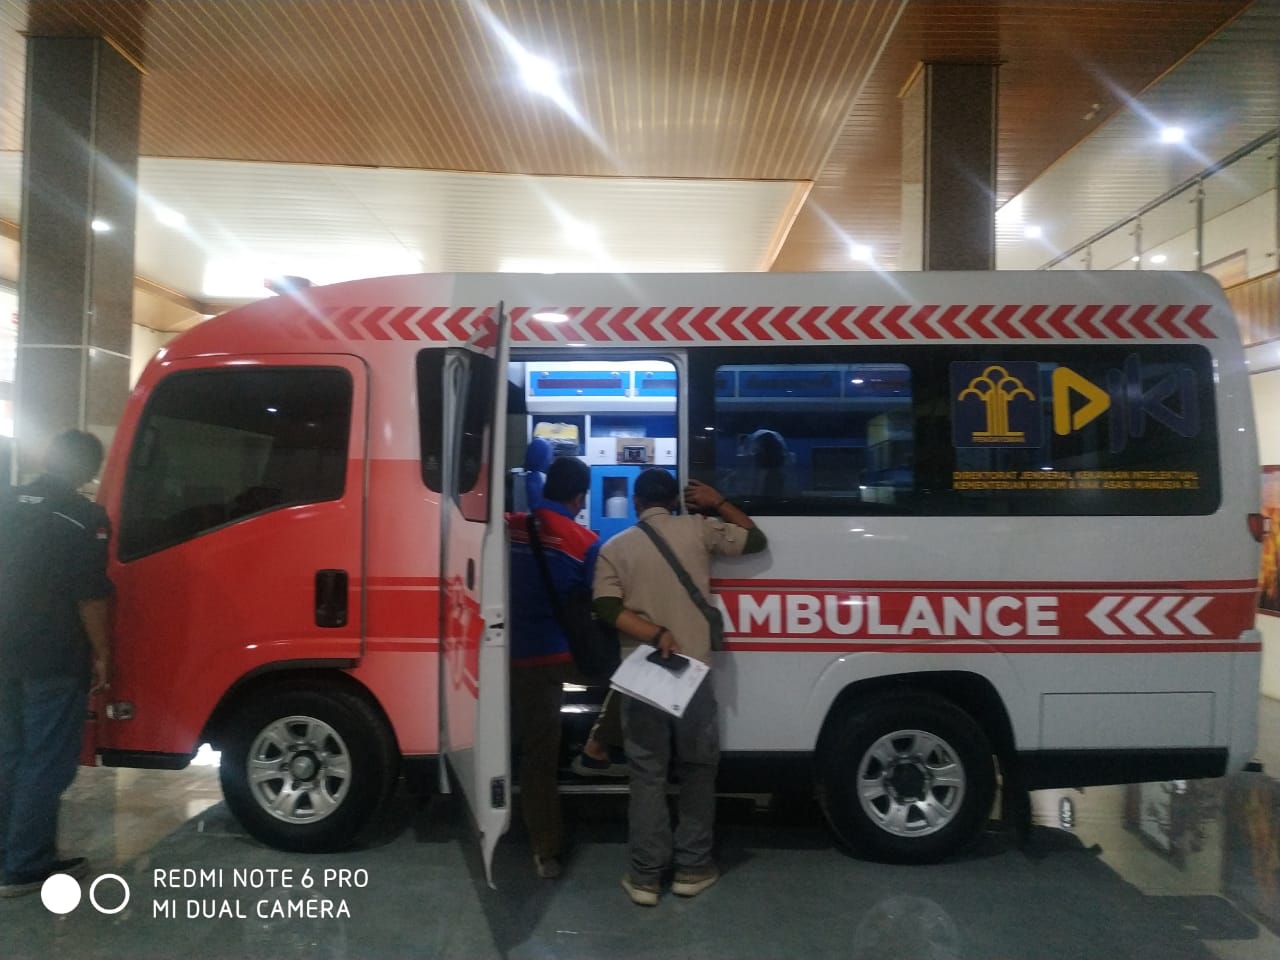 Harga Bengkel Karoseri Ambulance Termurah Jawa Timur